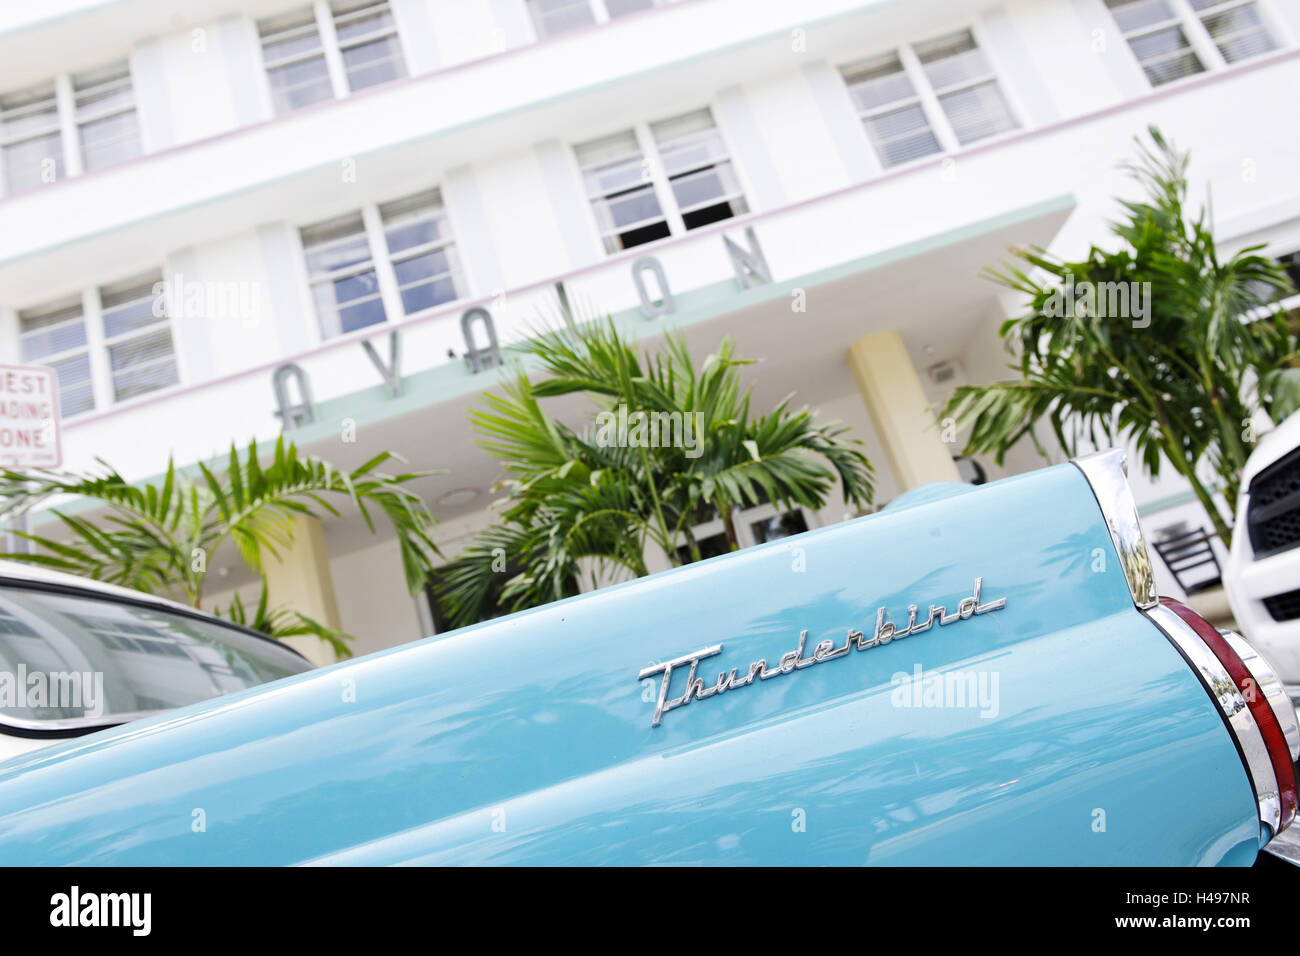 Schwanzflosse eines Ford Thunderbird, Baujahr 1957, den fünfziger Jahren, amerikanische Oldtimer, Hotel Avalon, Ocean Drive, South Miami Beach Art Deco District, Florida, USA, Stockfoto